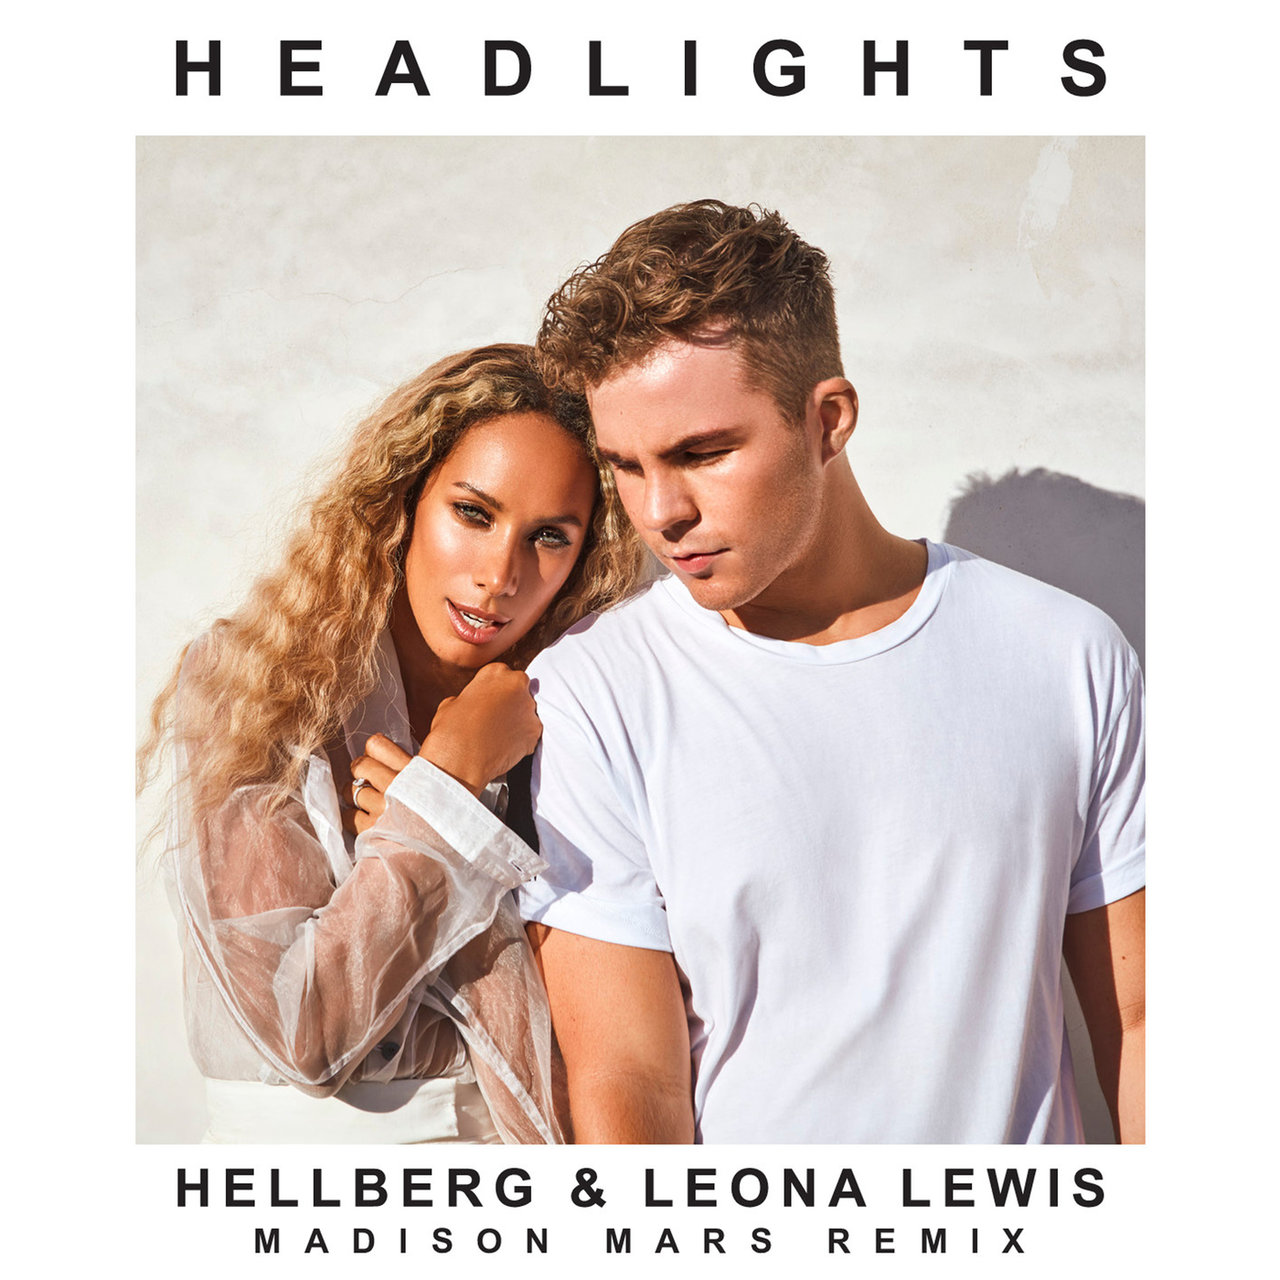 Hellberg & Leona Lewis Headlights (Madison Mars Remix) cover artwork